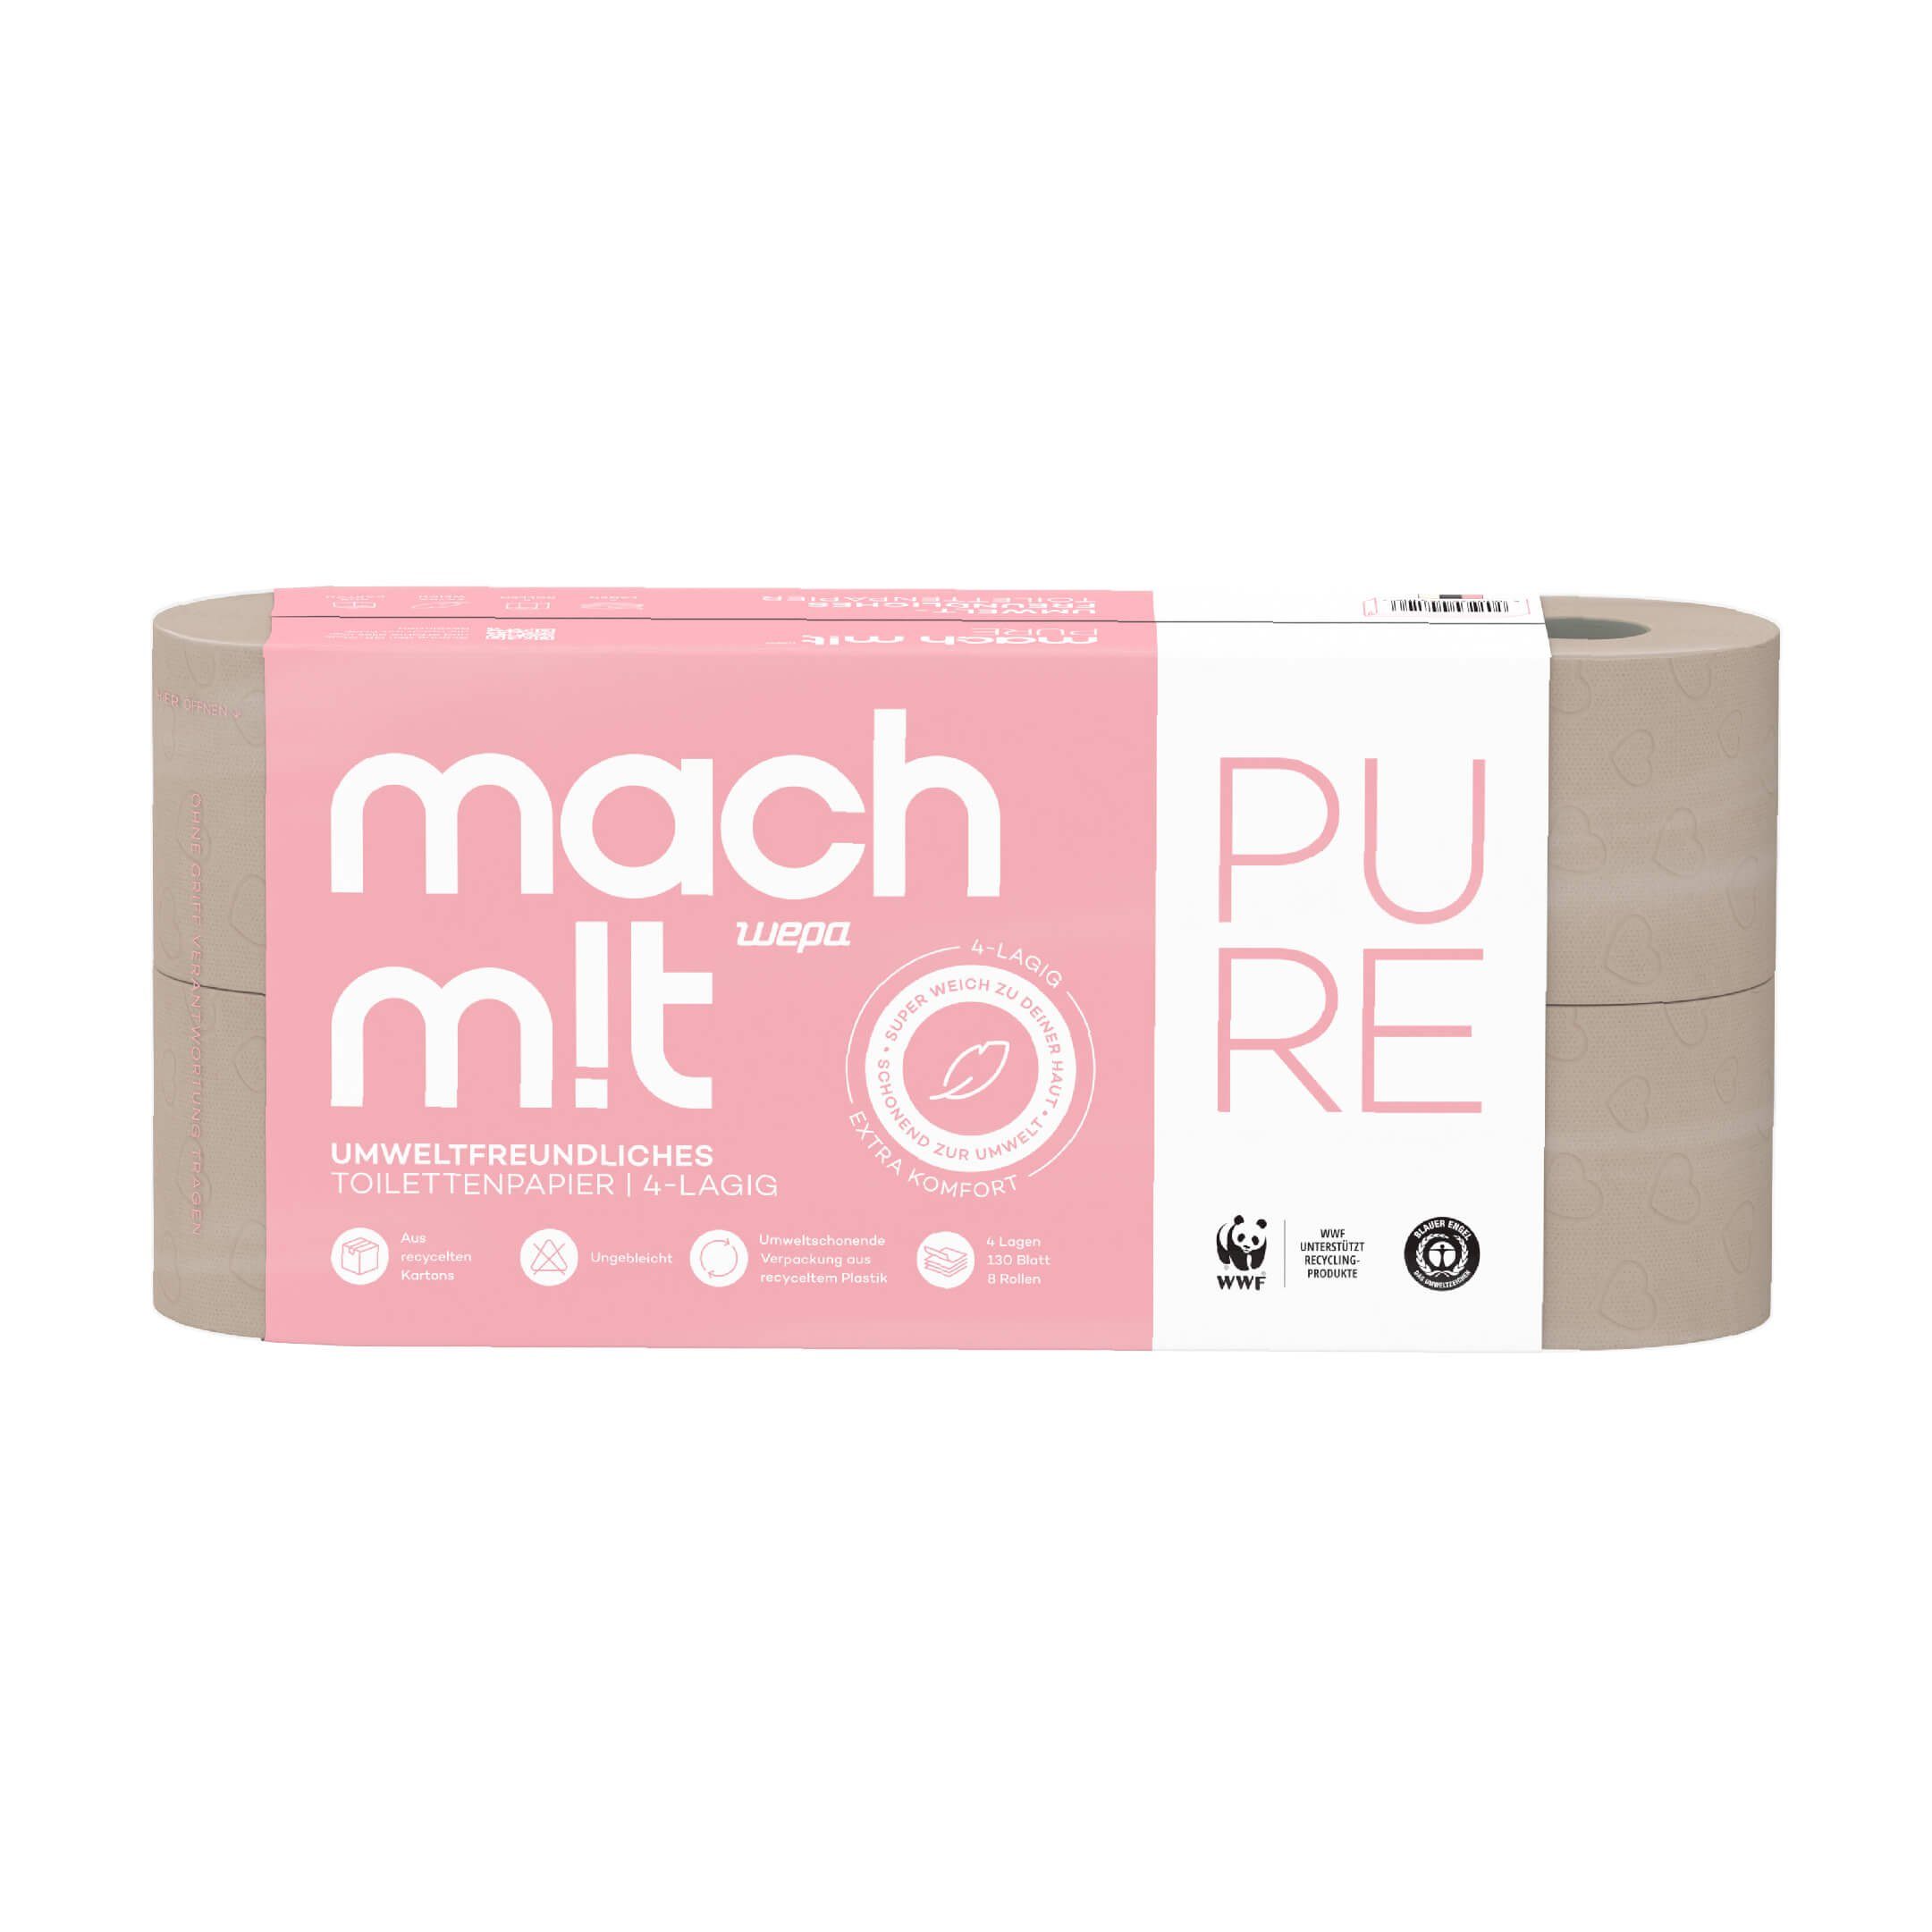 mach m!t Toilettenpapier PURE 4-lagig - extra weich - das Premium Hygienepapier (8-St)